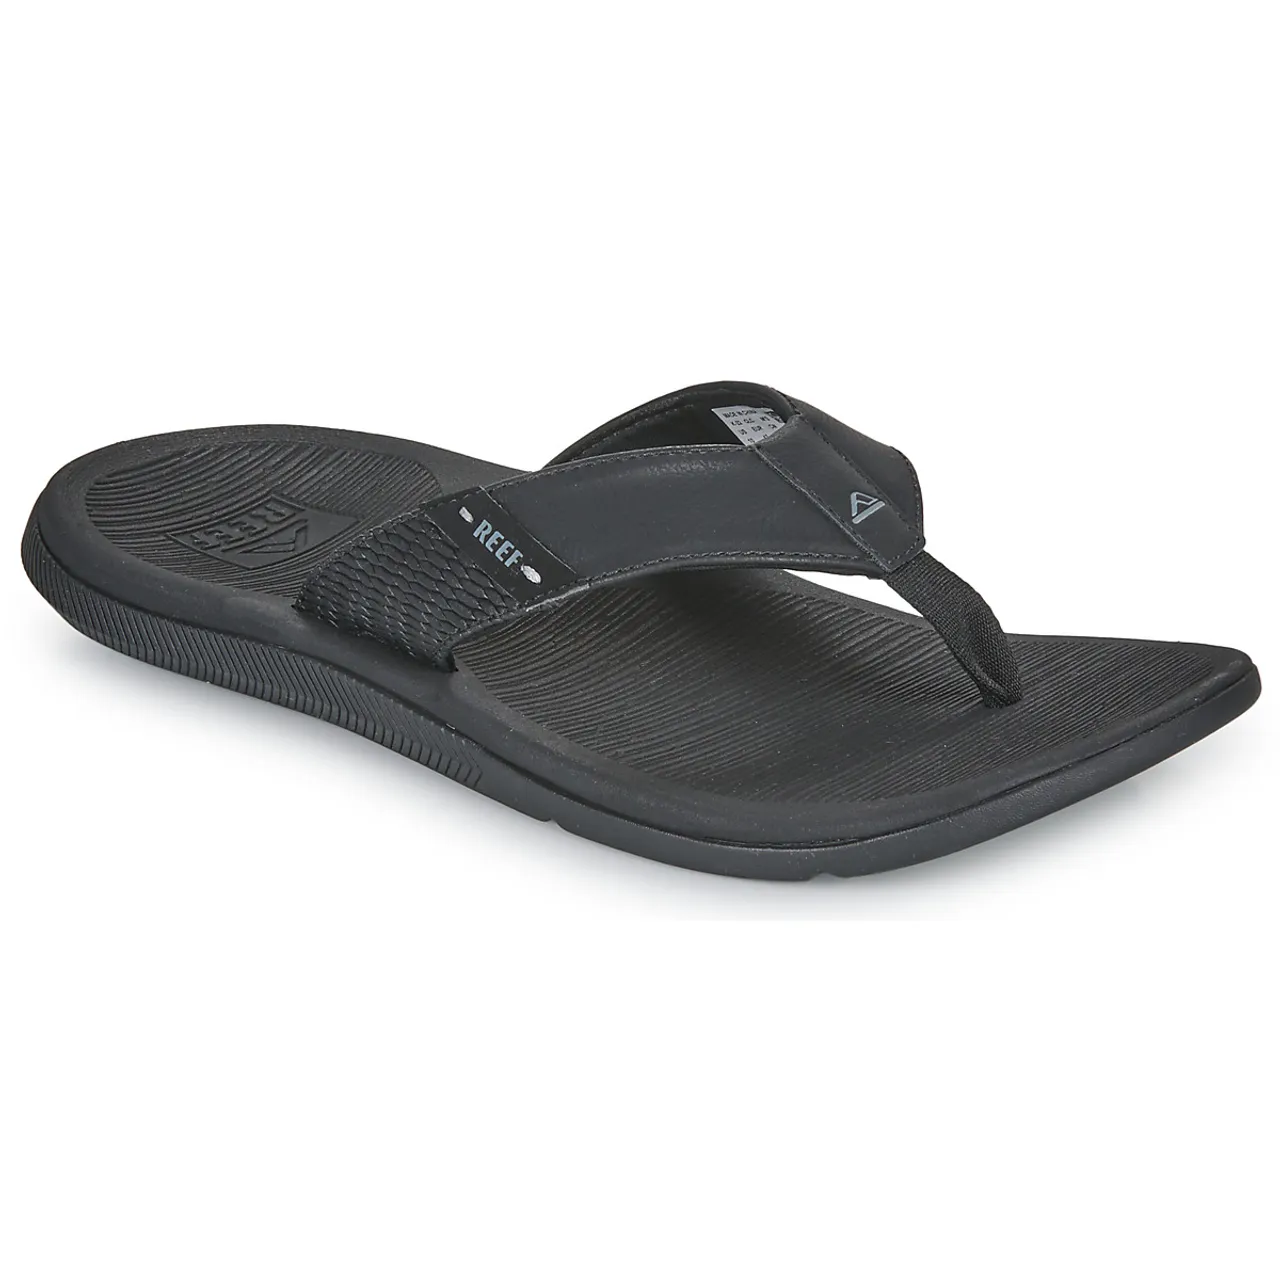 Reef  REEF SANTA ANA  men's Flip flops / Sandals (Shoes) in Black